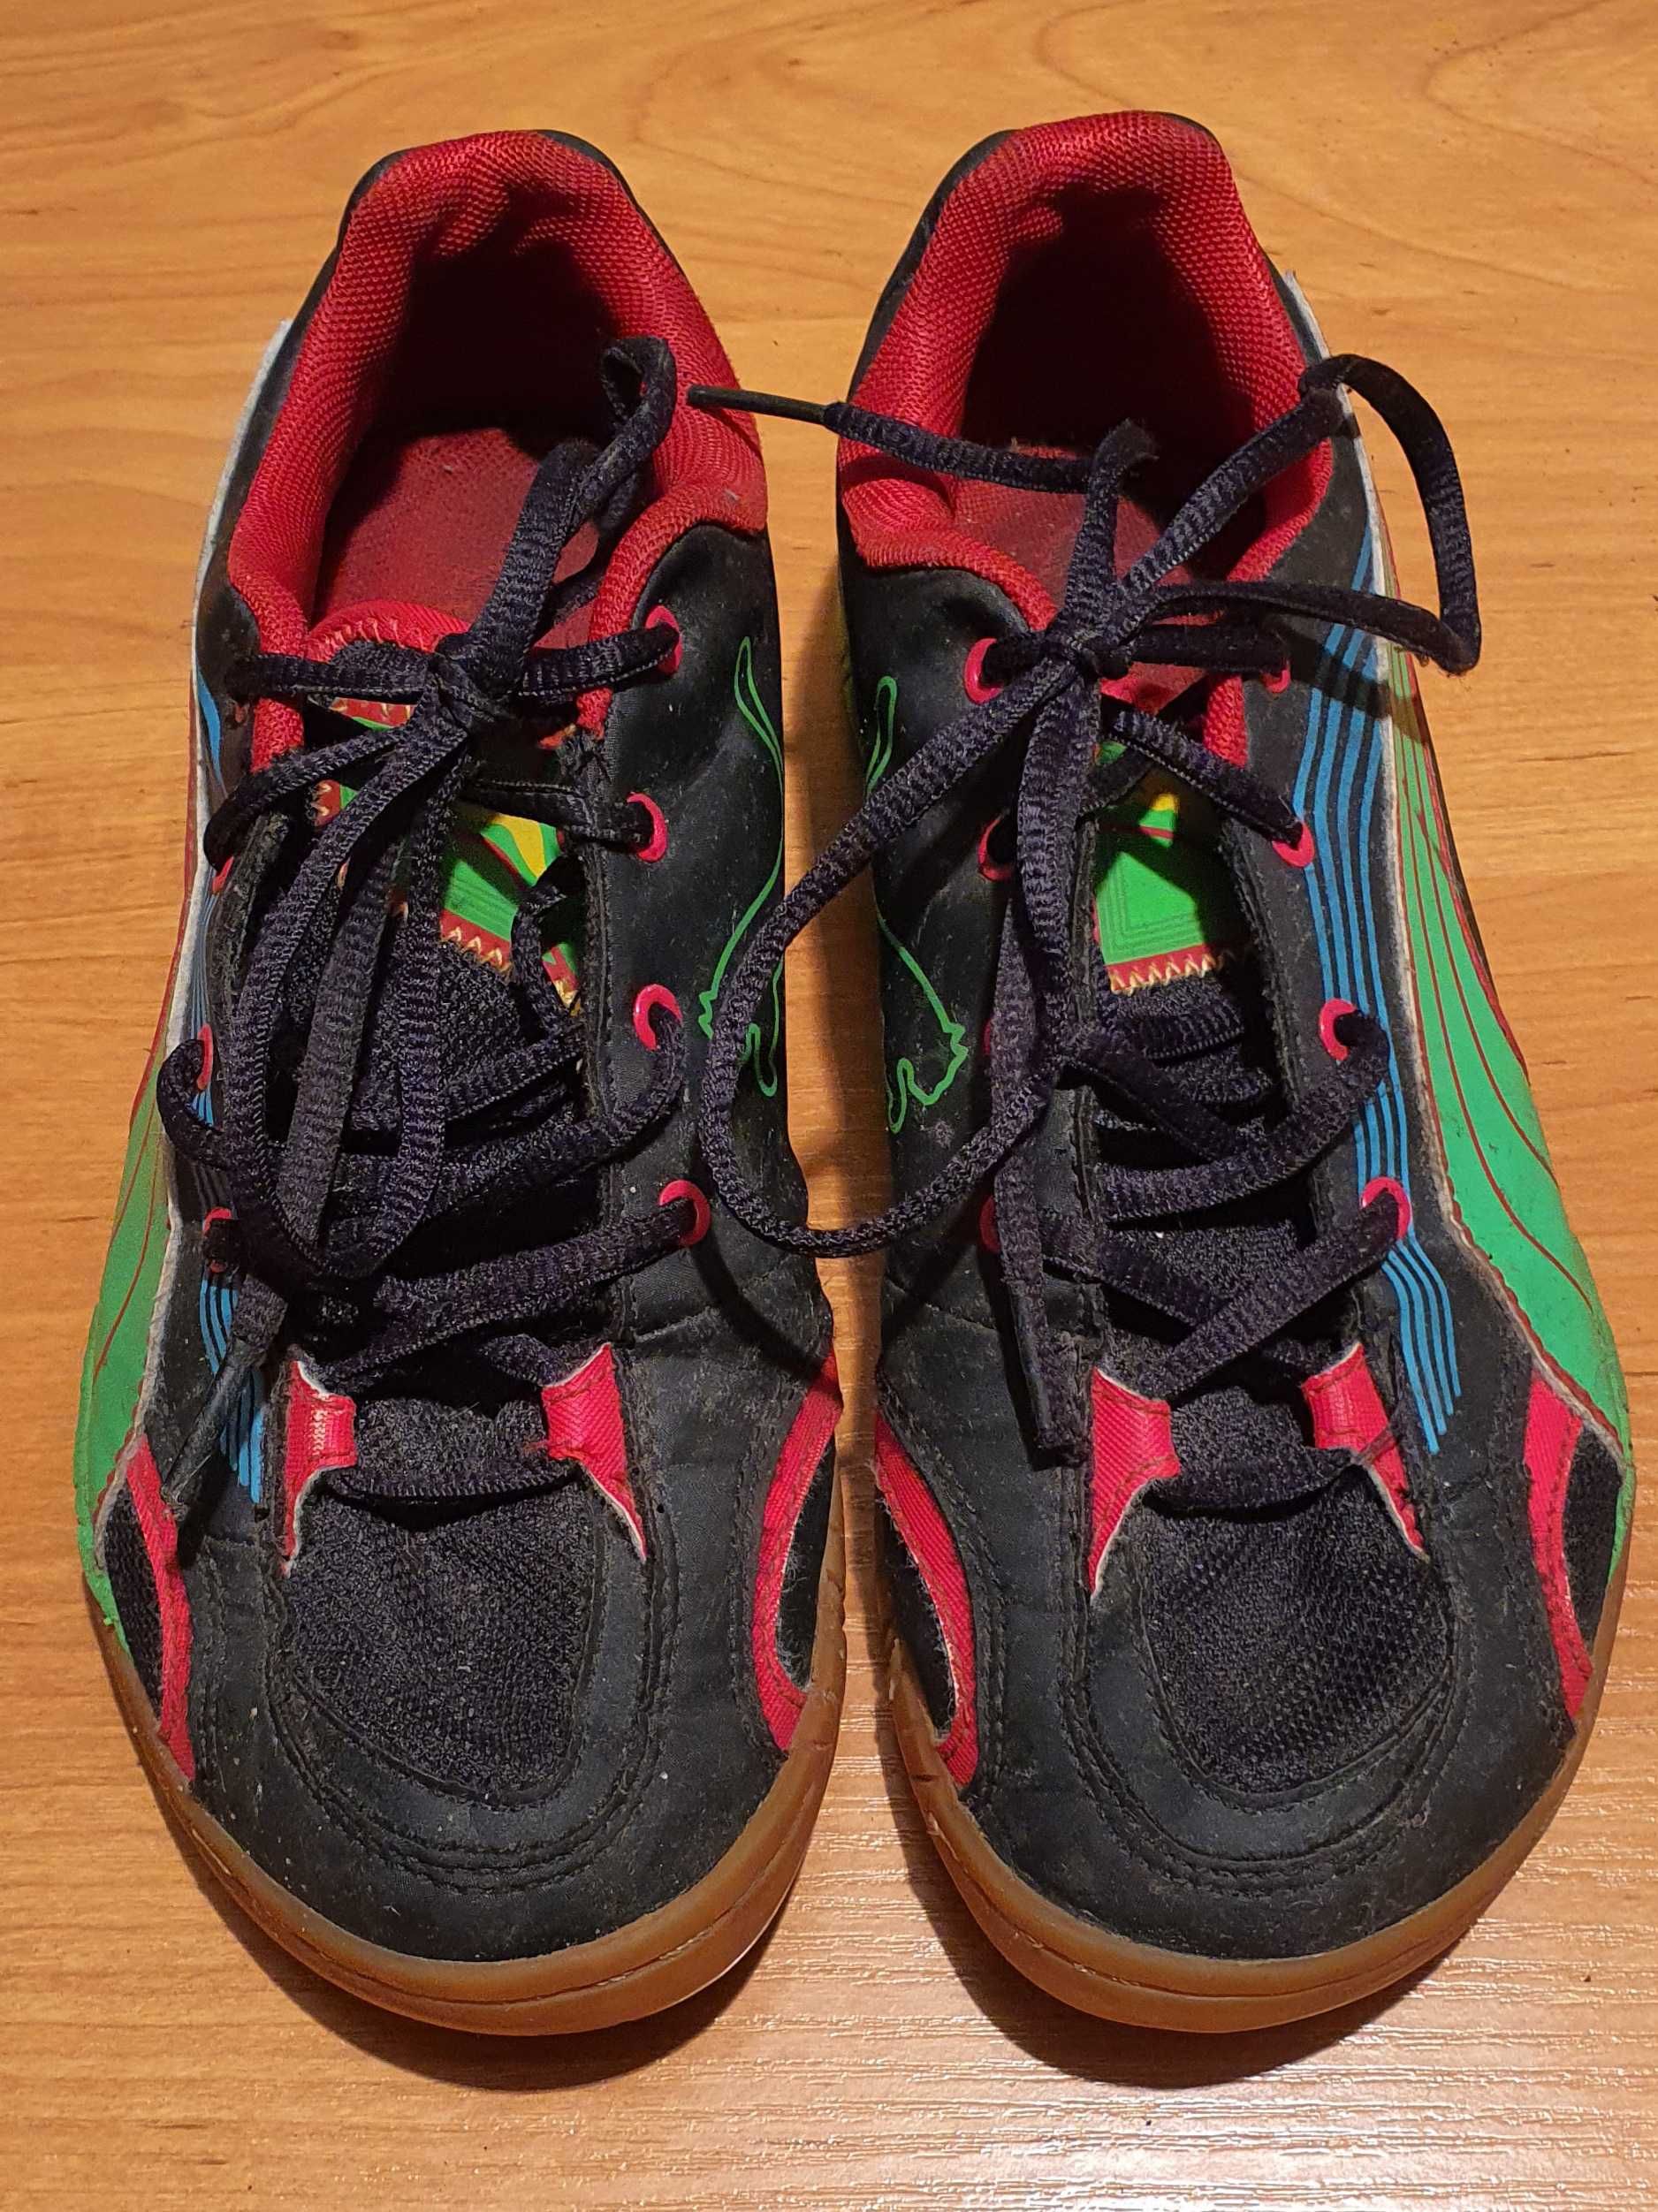 Kolorowe buty halowe PUMA, rozm. 37 (dł. wkładki 23 cm)